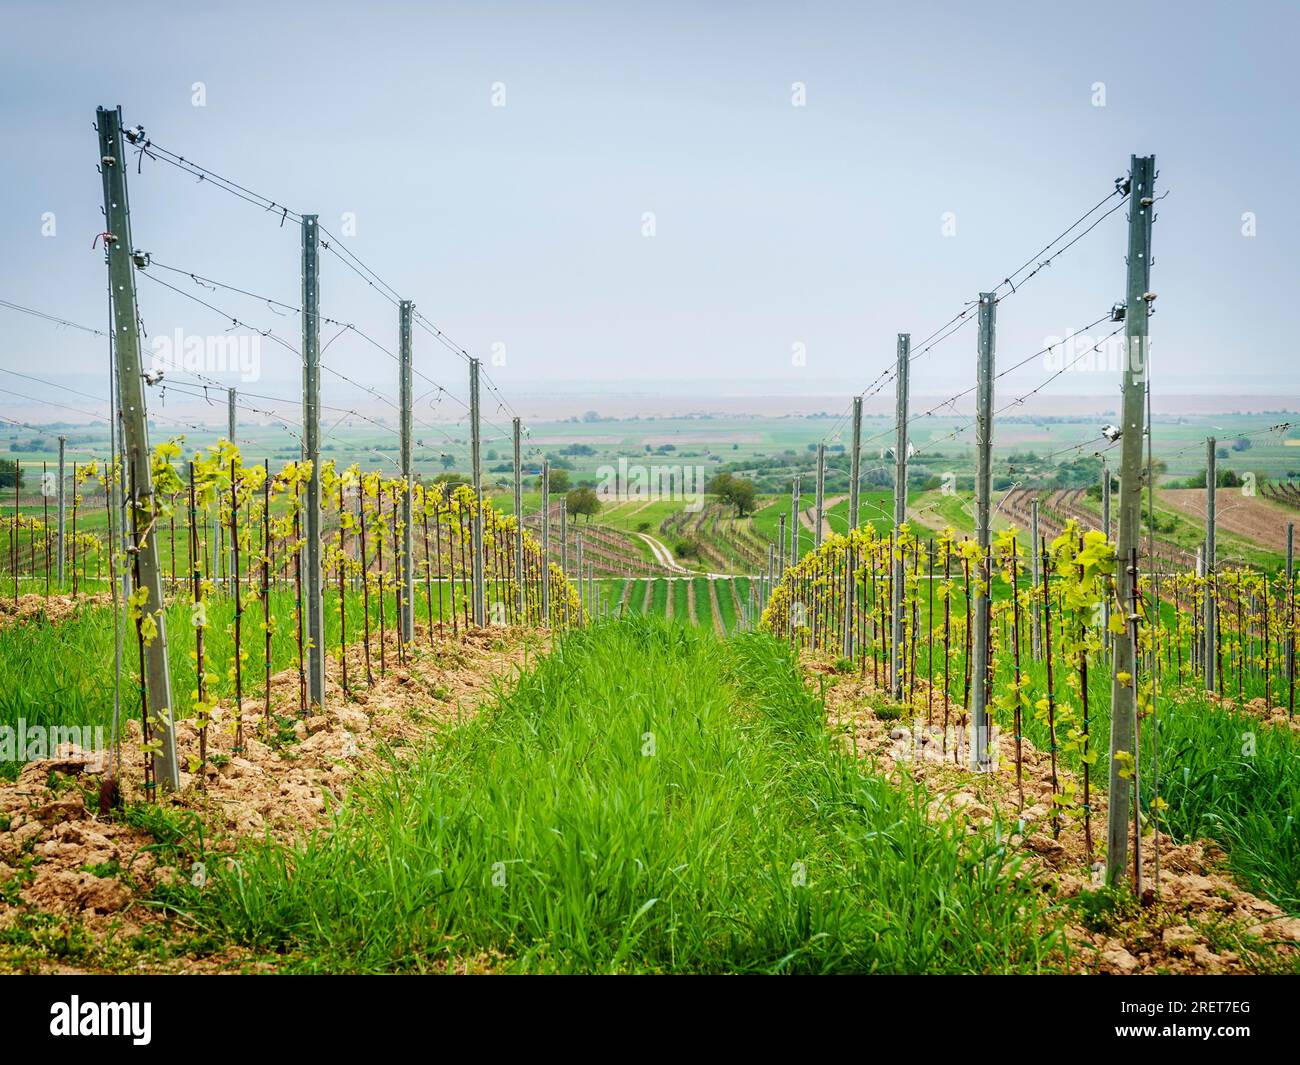 Vineyard plantation at lake Neusiedlersee in Burgenland Stock Photo